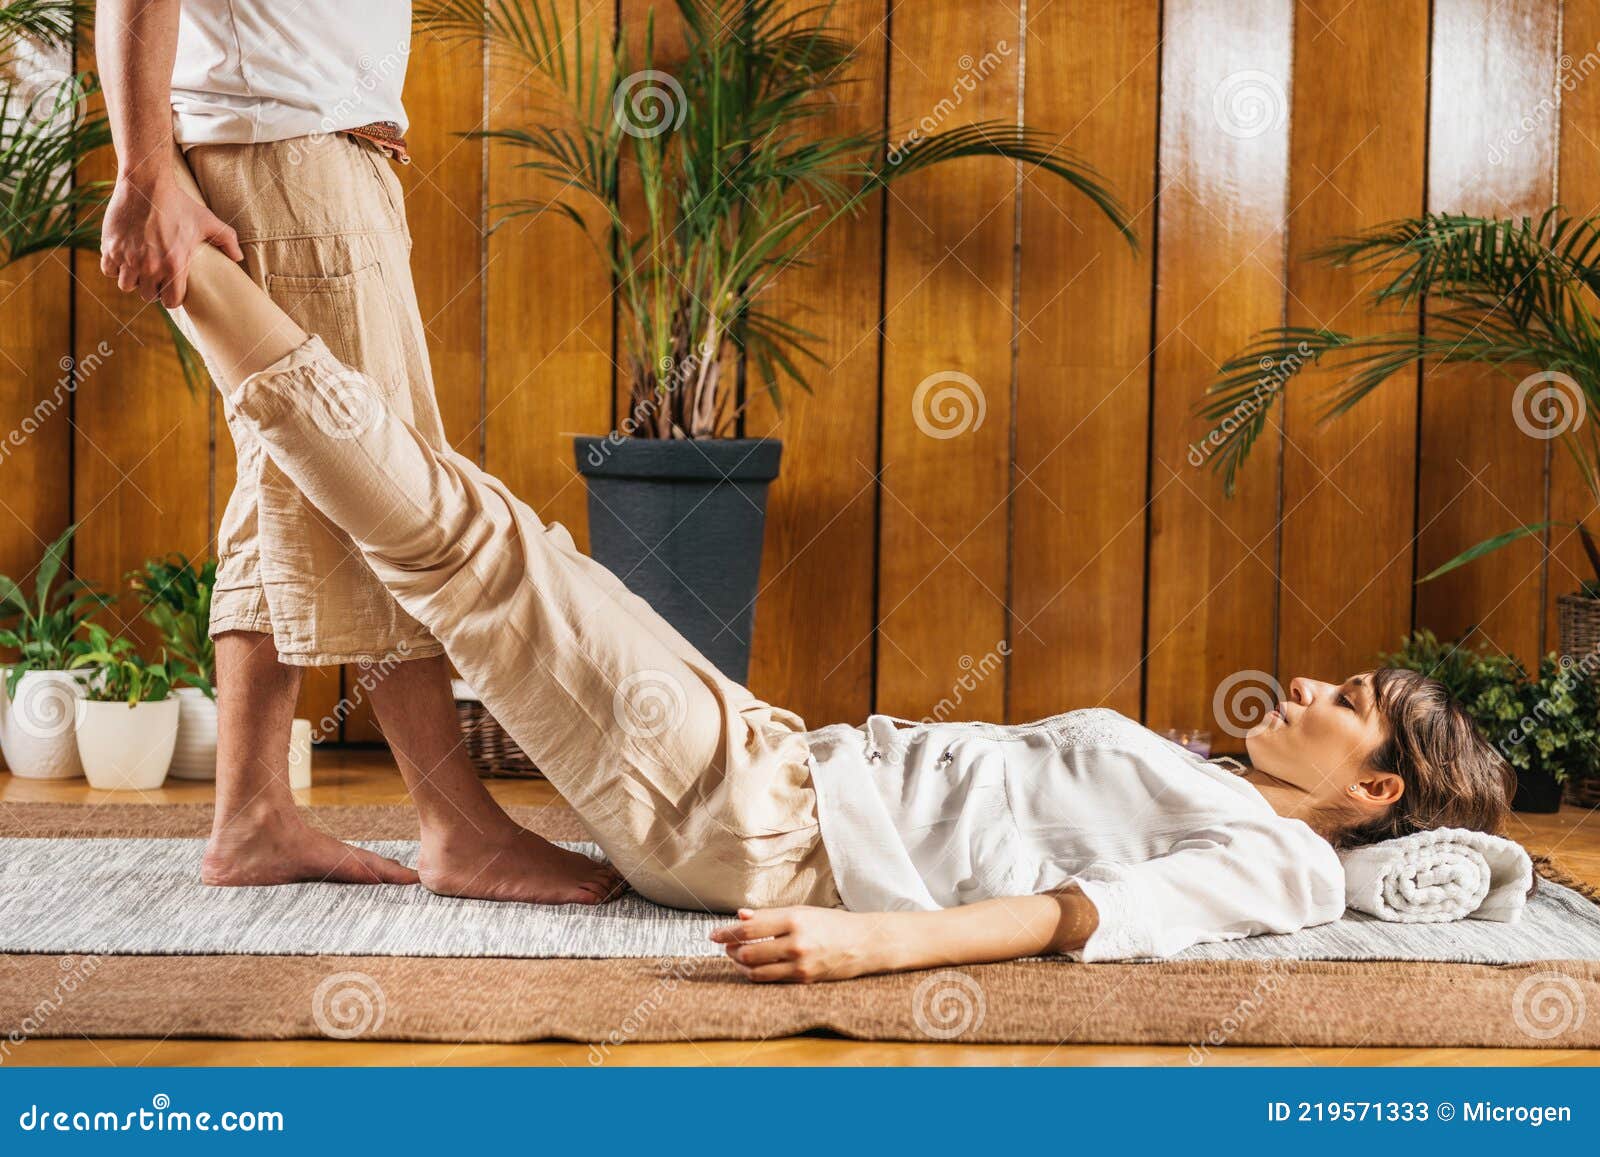 Técnica Tradicional De Relaxamento Passivo Por Estiramento Do Yoga Thai  Imagem de Stock - Imagem de paciente, tailândia: 219571333